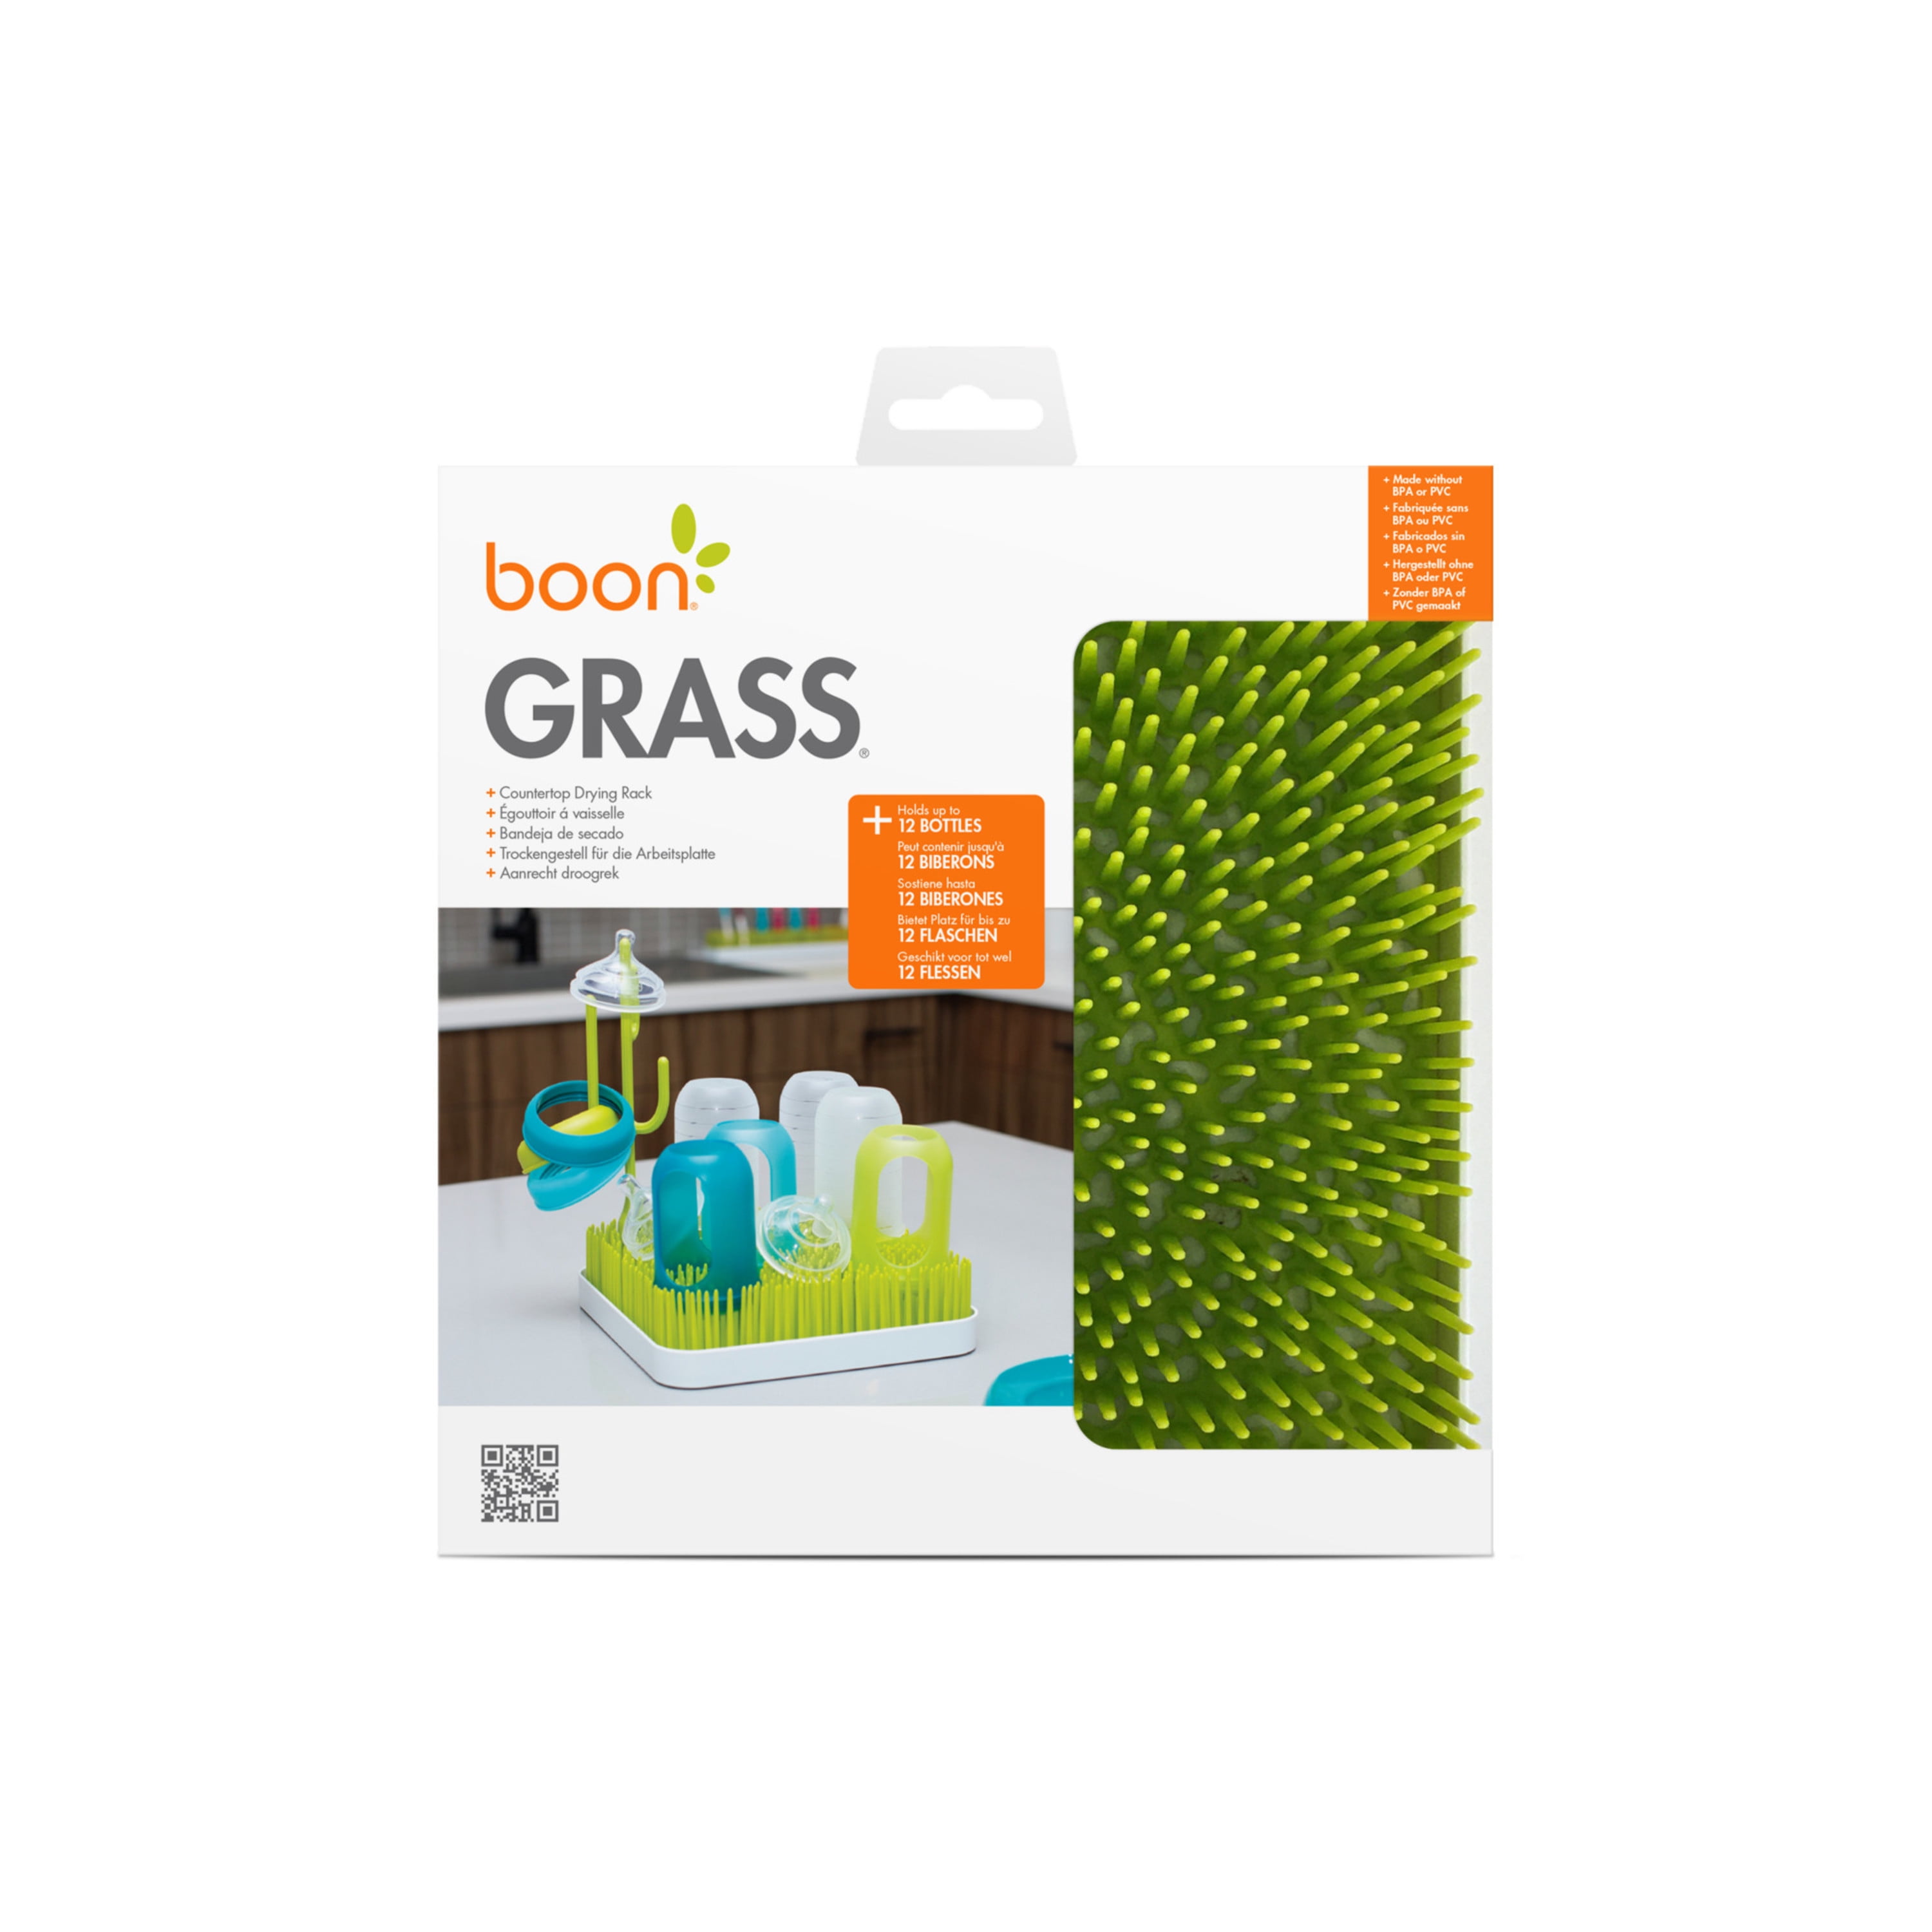 boon grass